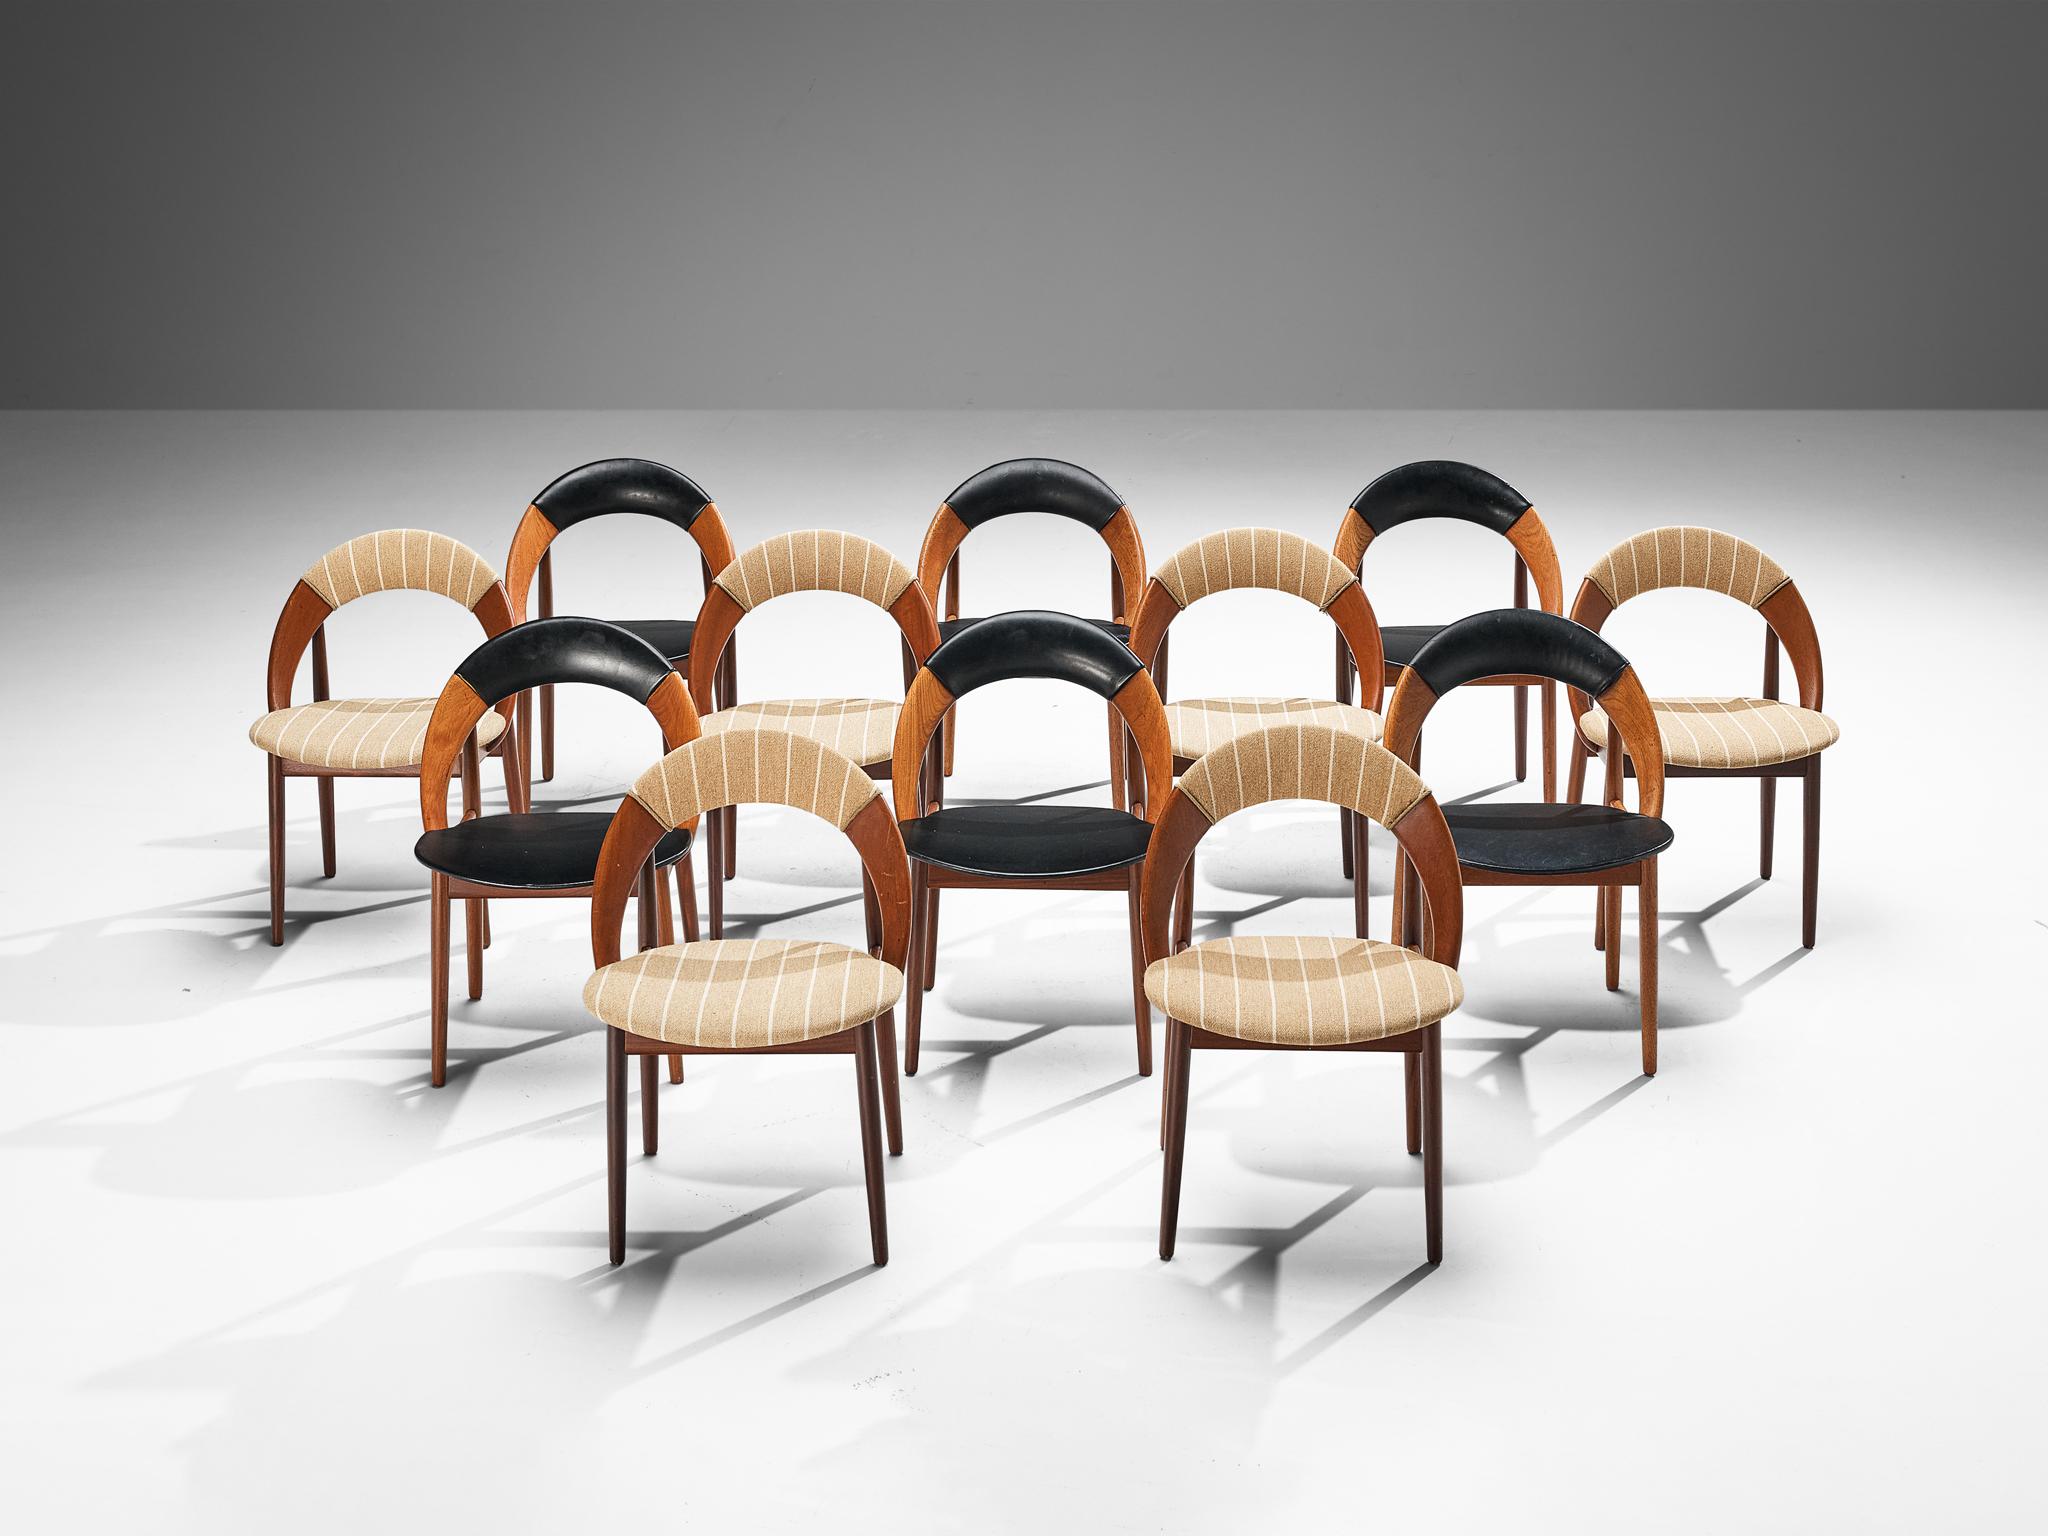 Arne Hovmand-Olsen, Satz von zwölf Esszimmerstühlen, Teak, Stoff, Kunstleder, Dänemark, 1960er Jahre 

Satz von zwölf Esszimmerstühlen des dänischen Designers Arne Hovmand-Olsen. Die Stühle haben ein sehr einfaches und organisches Design. Der